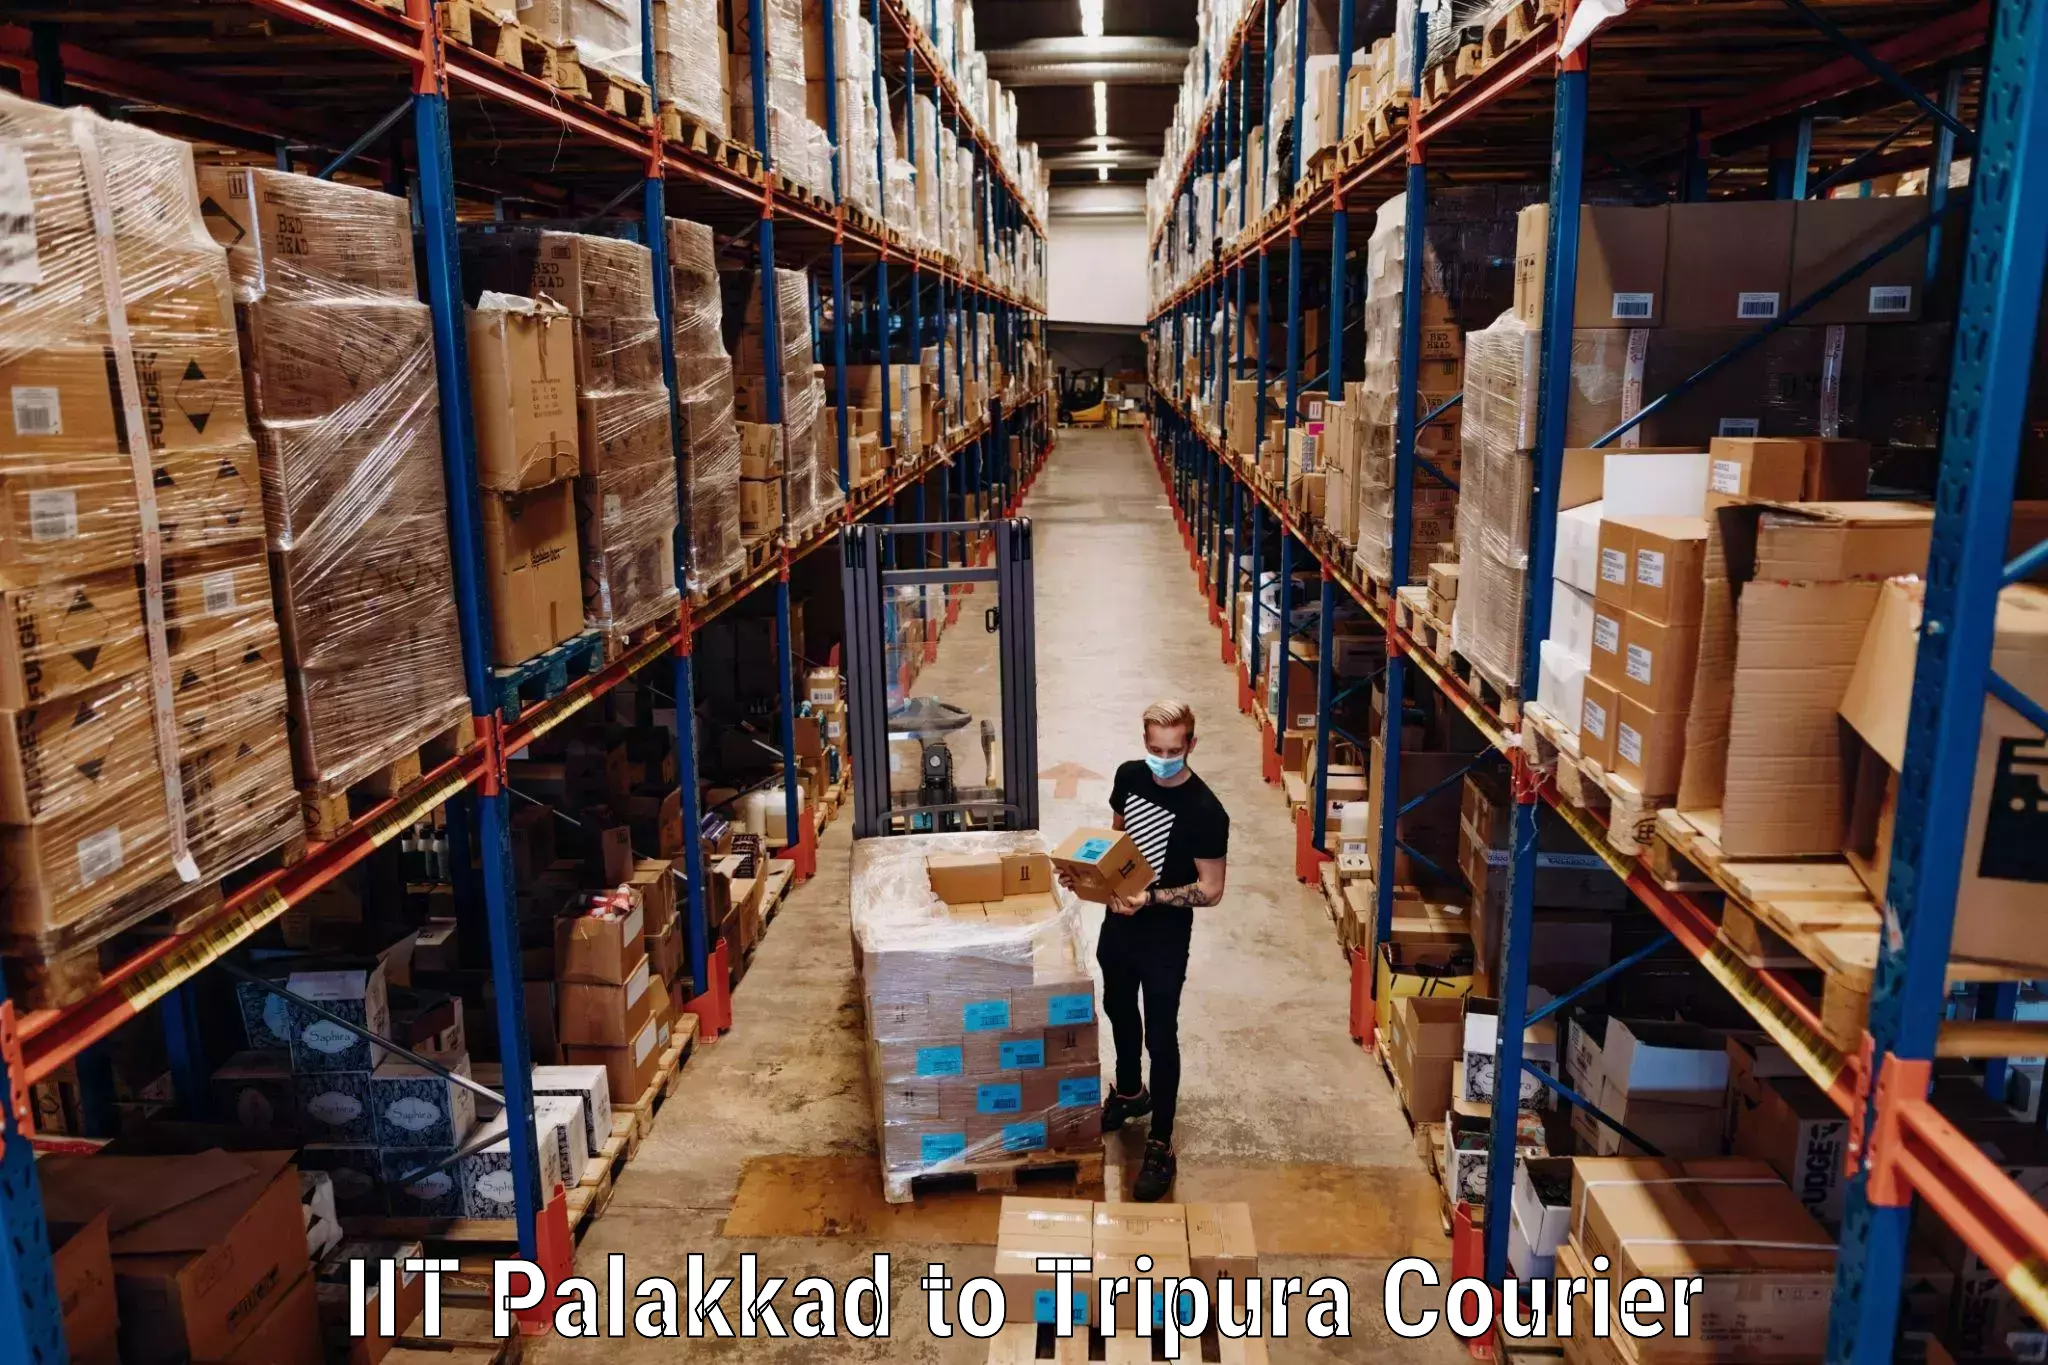 Luggage shipment specialists IIT Palakkad to Dharmanagar